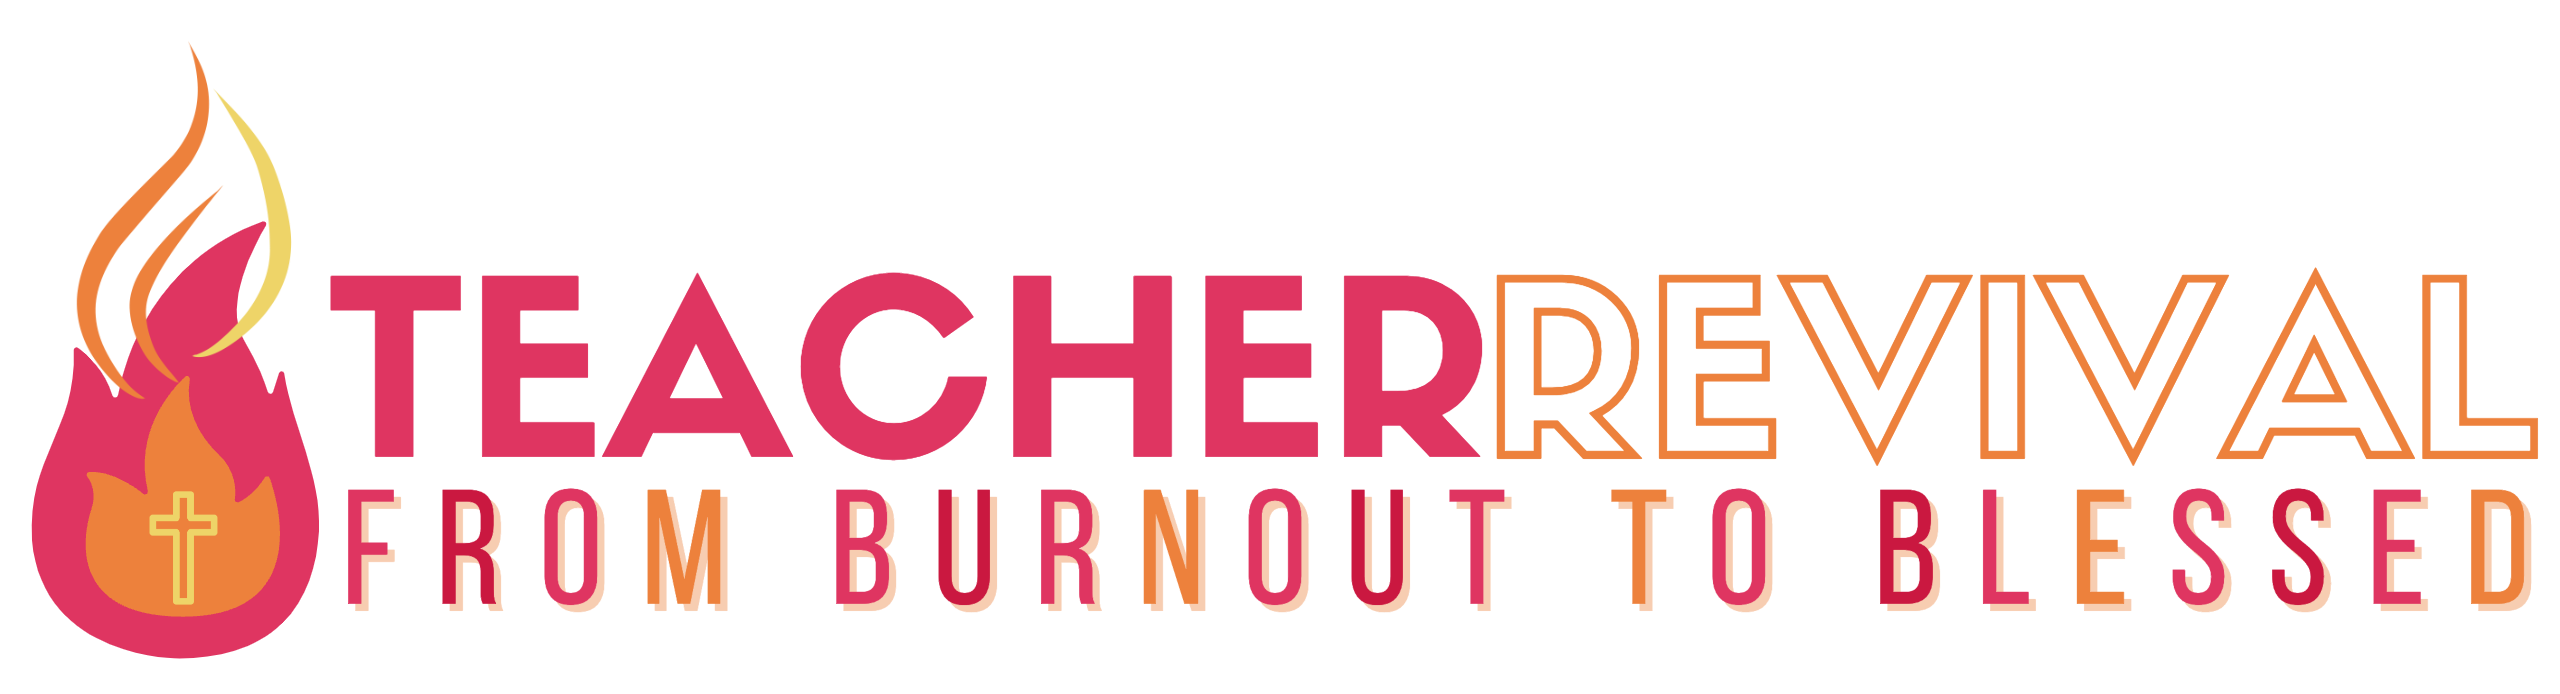 Teacher Revival long logo